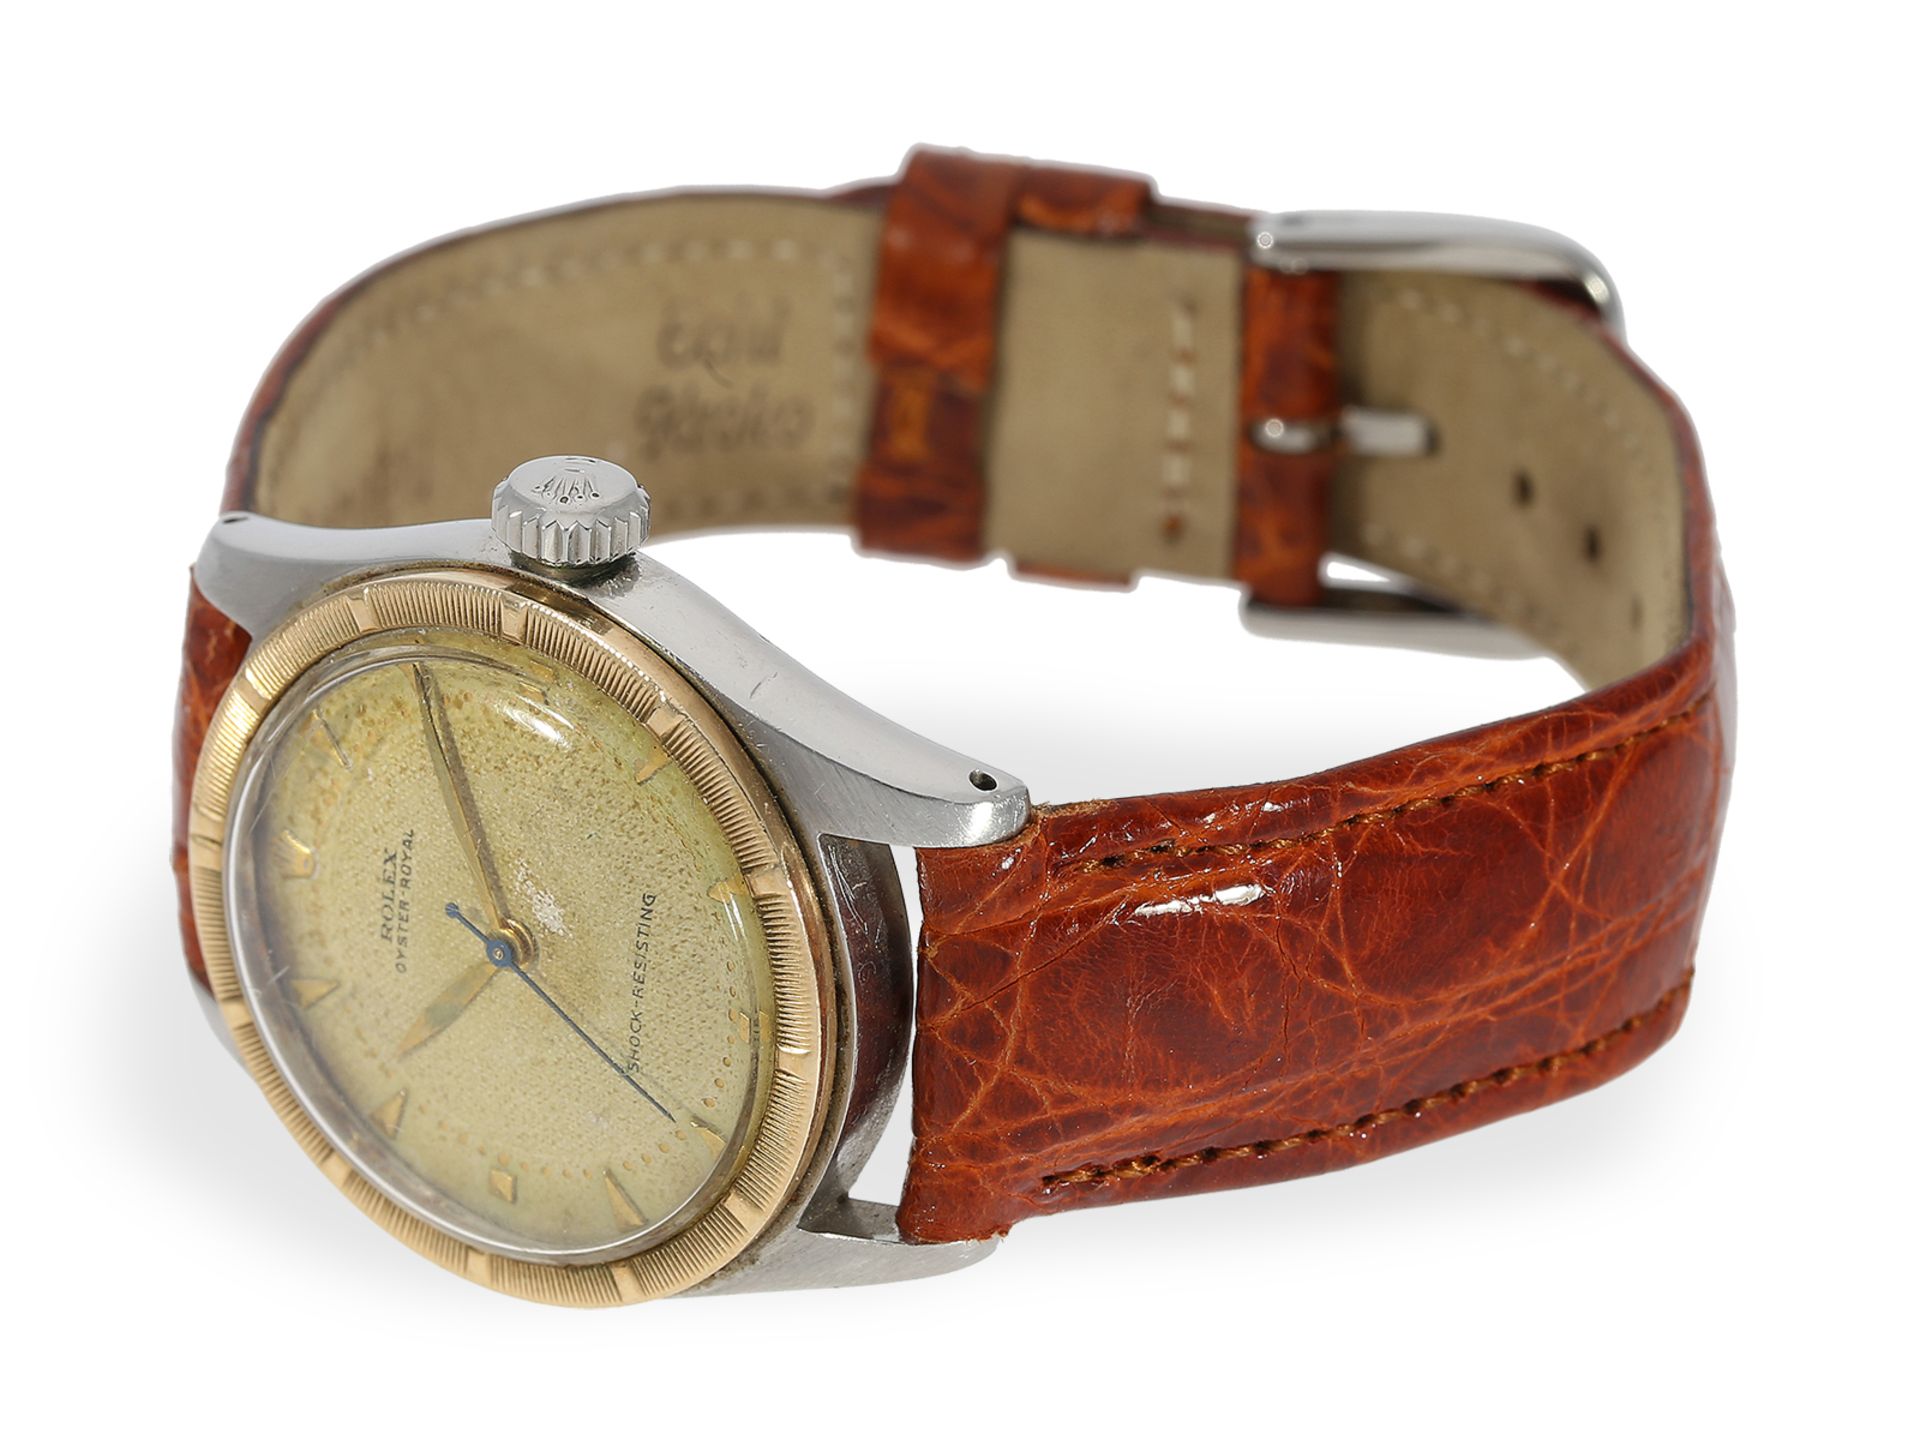 Armbanduhr: sehr seltene vintage Rolex Ref.6244 "Royal" mit Honeycomb-Dial, ca.1940 - Bild 4 aus 7